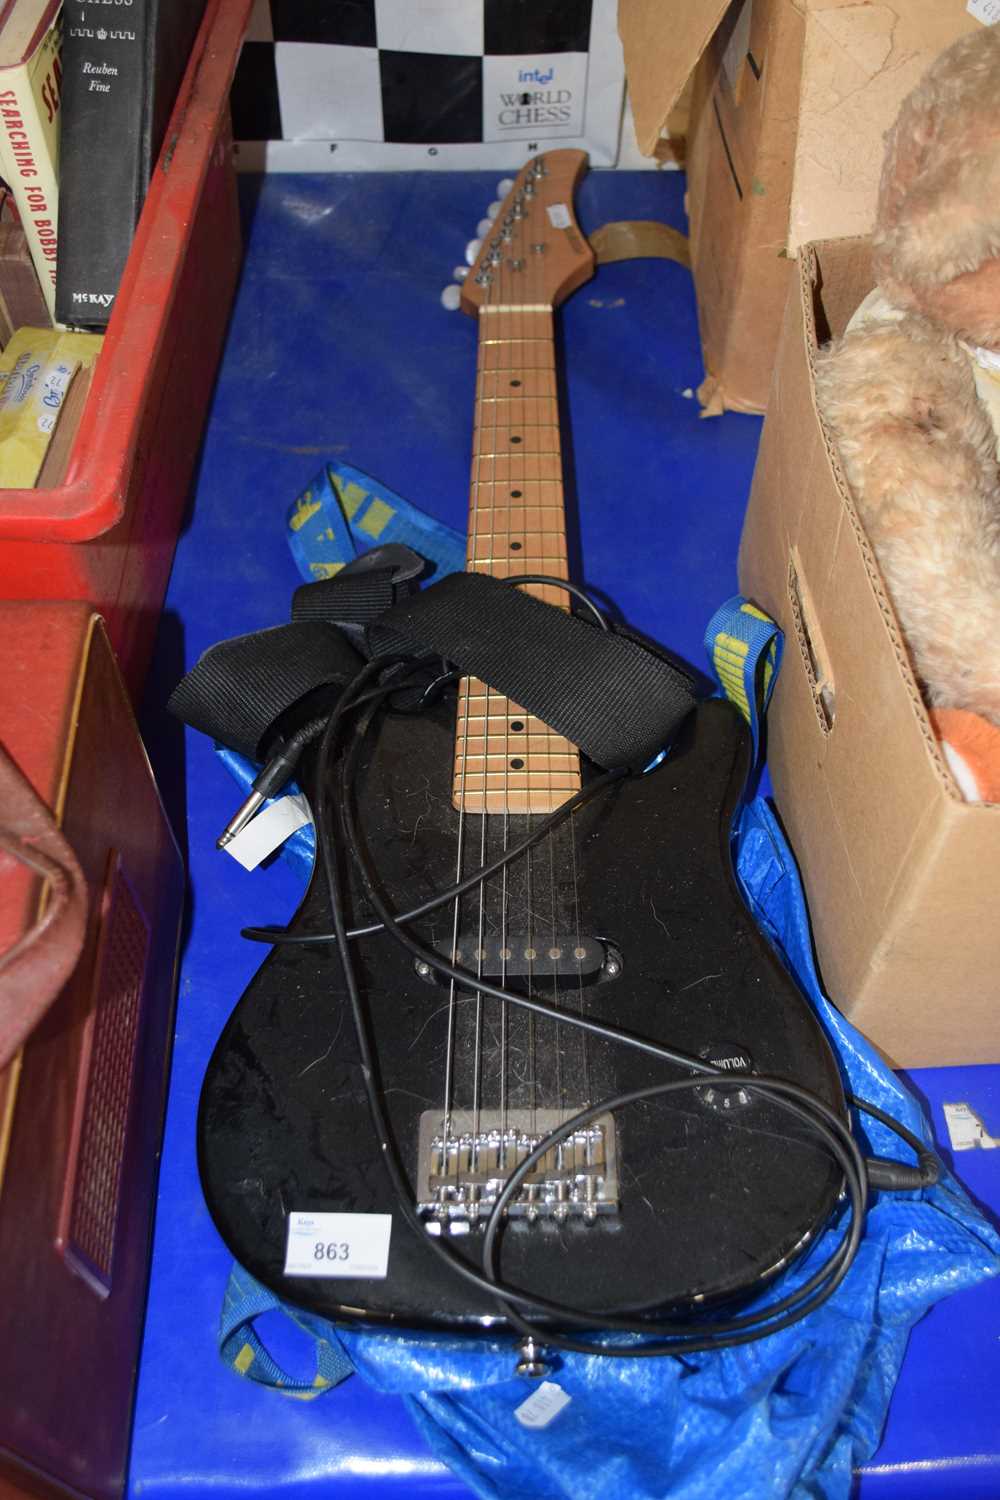 A Puretone "Kids" children's electric guitar